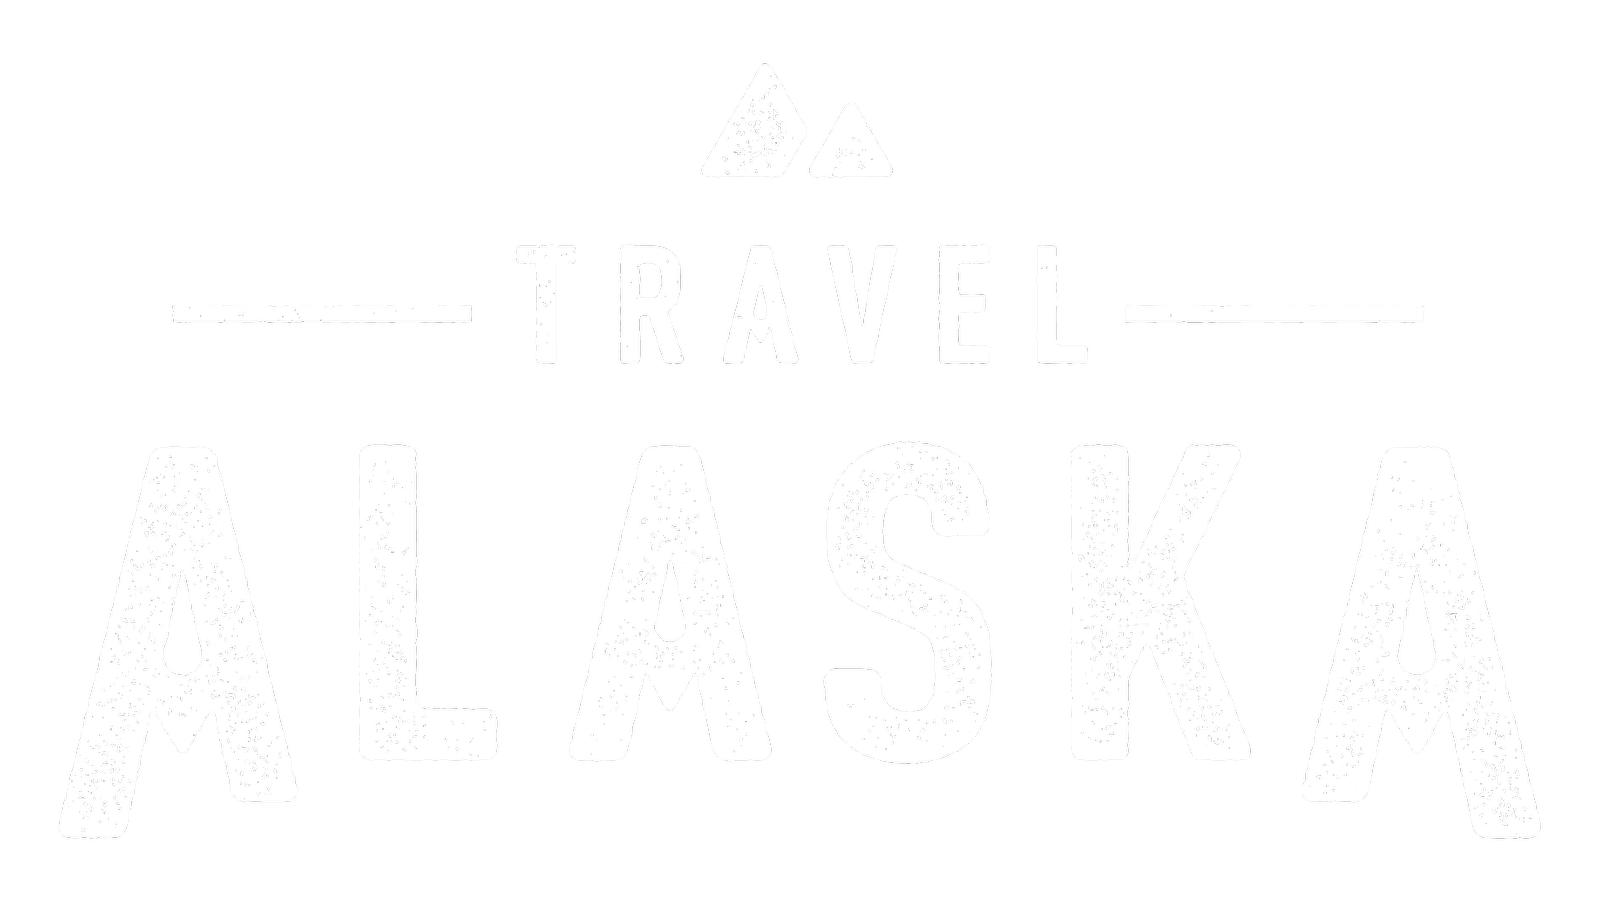 Travel Alaska Logo-CMYK_Large_transp.png